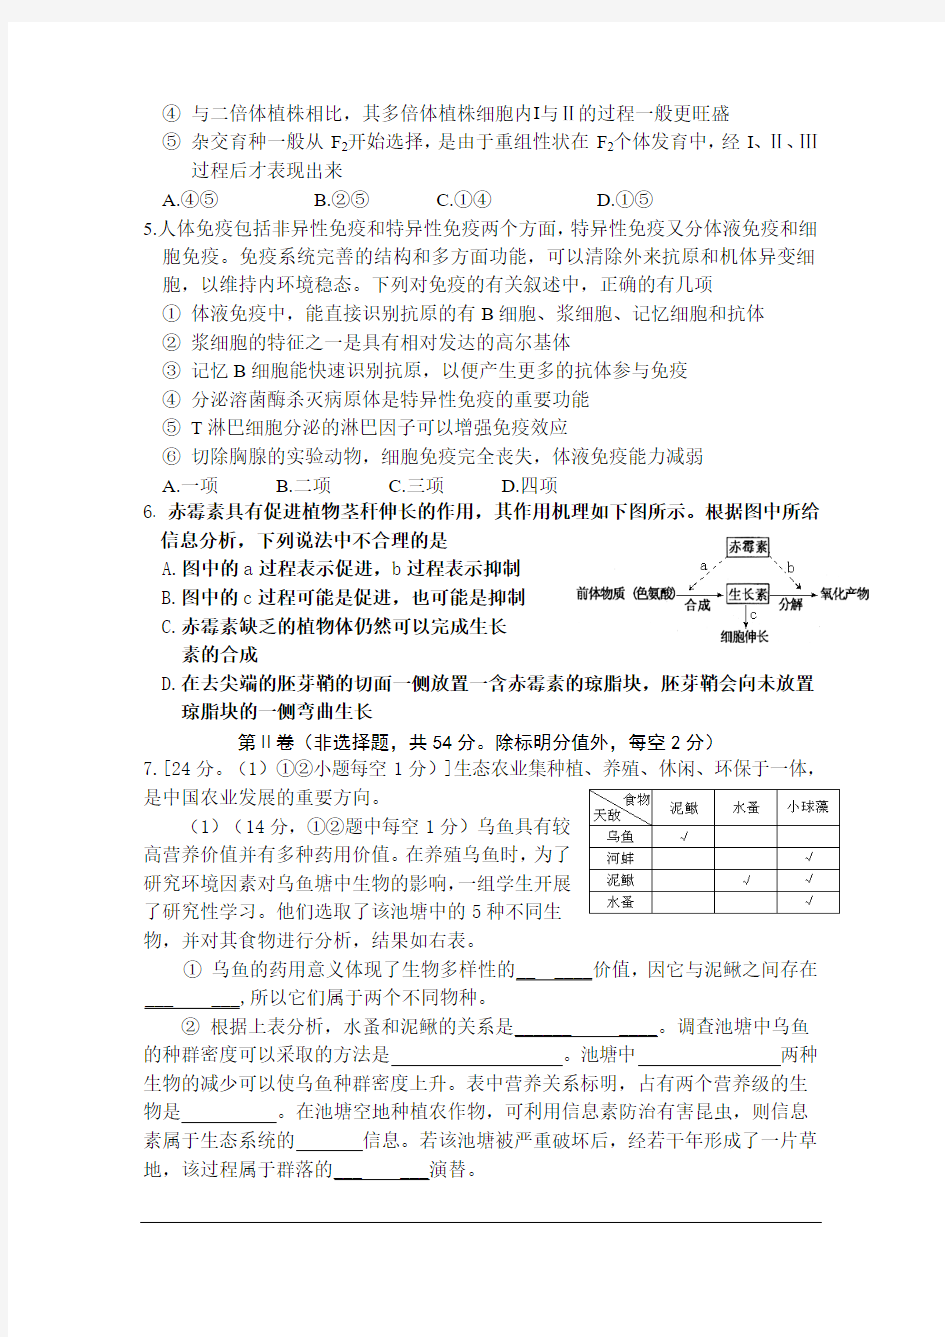 2013年重庆一中高2013级高三下期第三次月考理科综合试卷